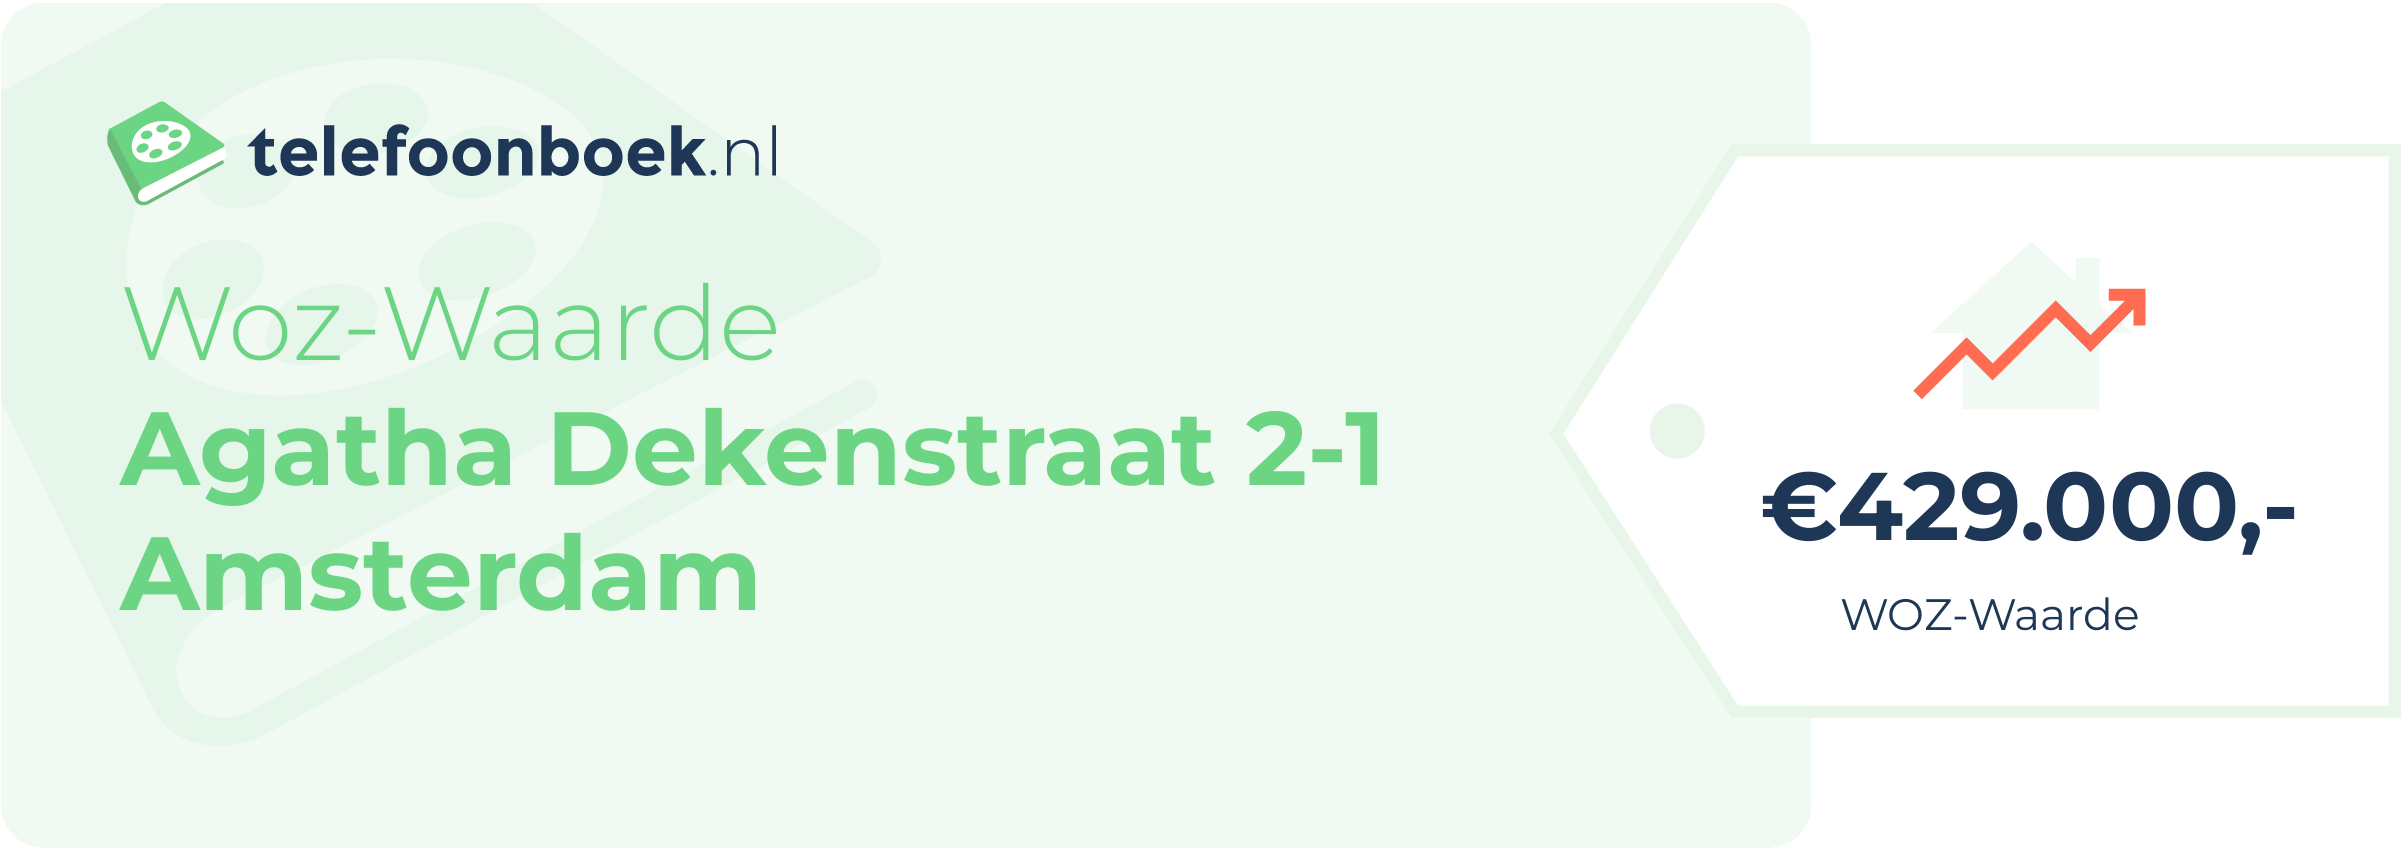 WOZ-waarde Agatha Dekenstraat 2-1 Amsterdam